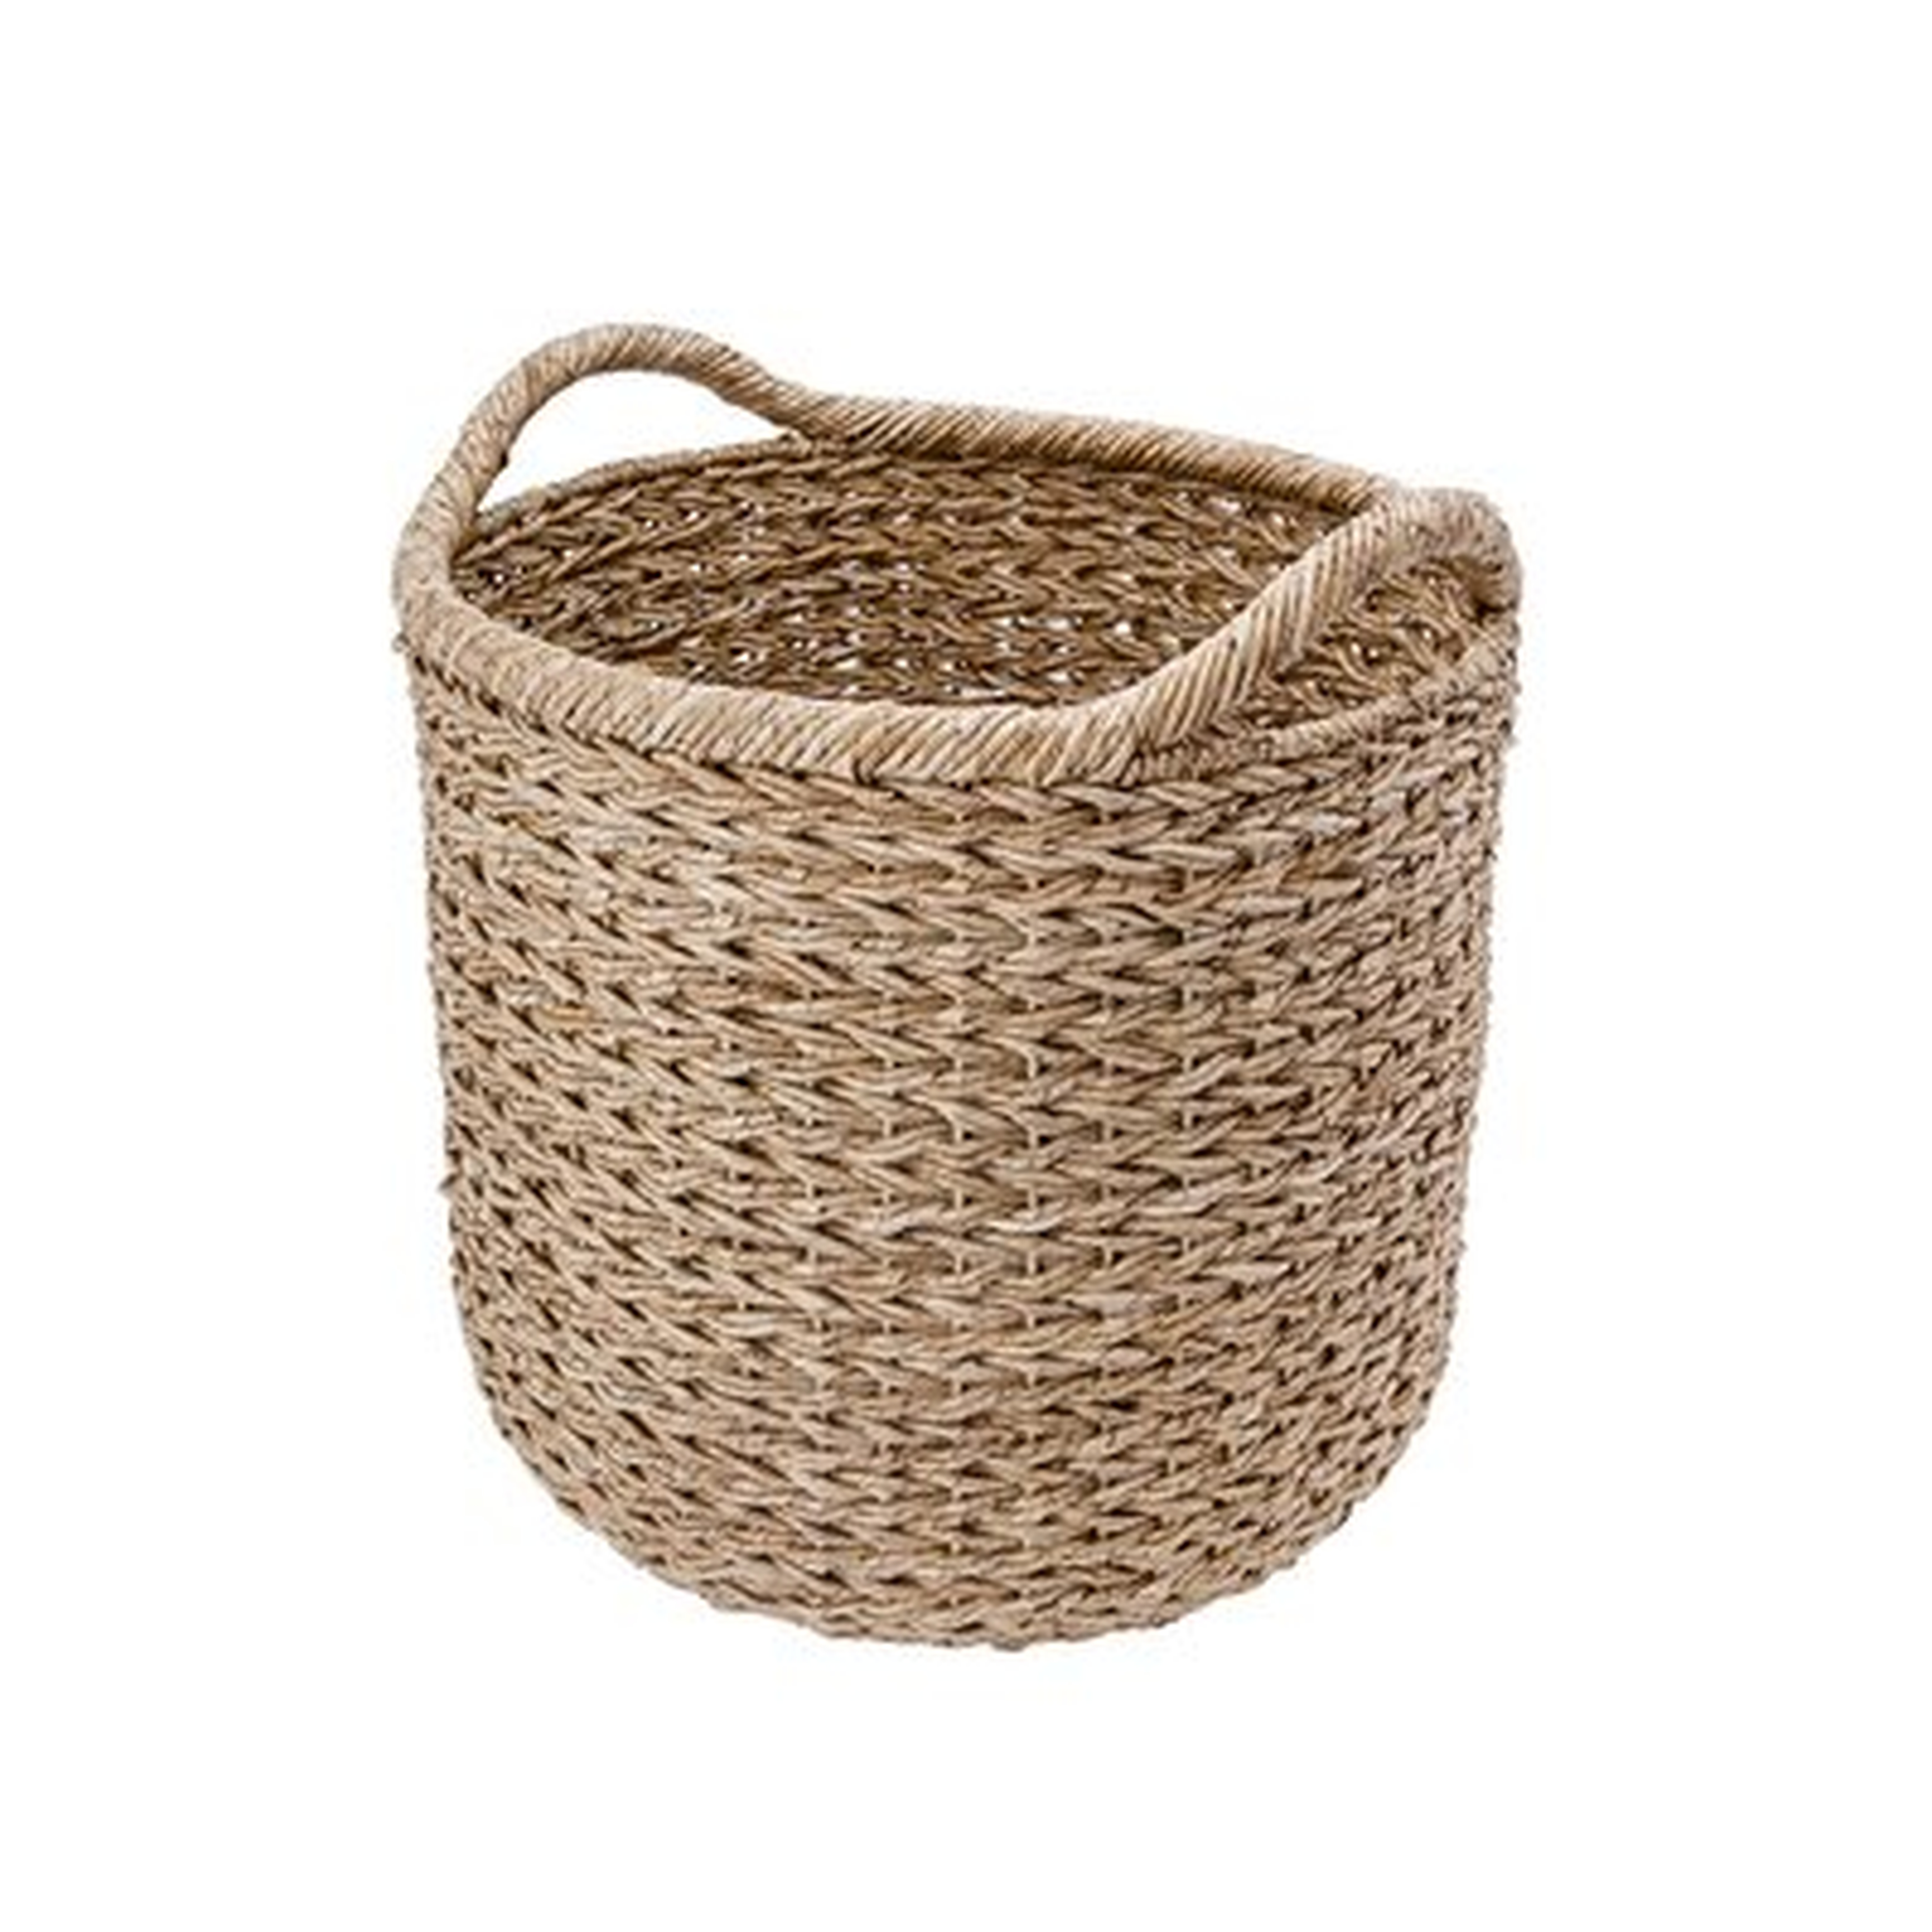 Decorative Braided Wicker Seagrass Basket - Birch Lane